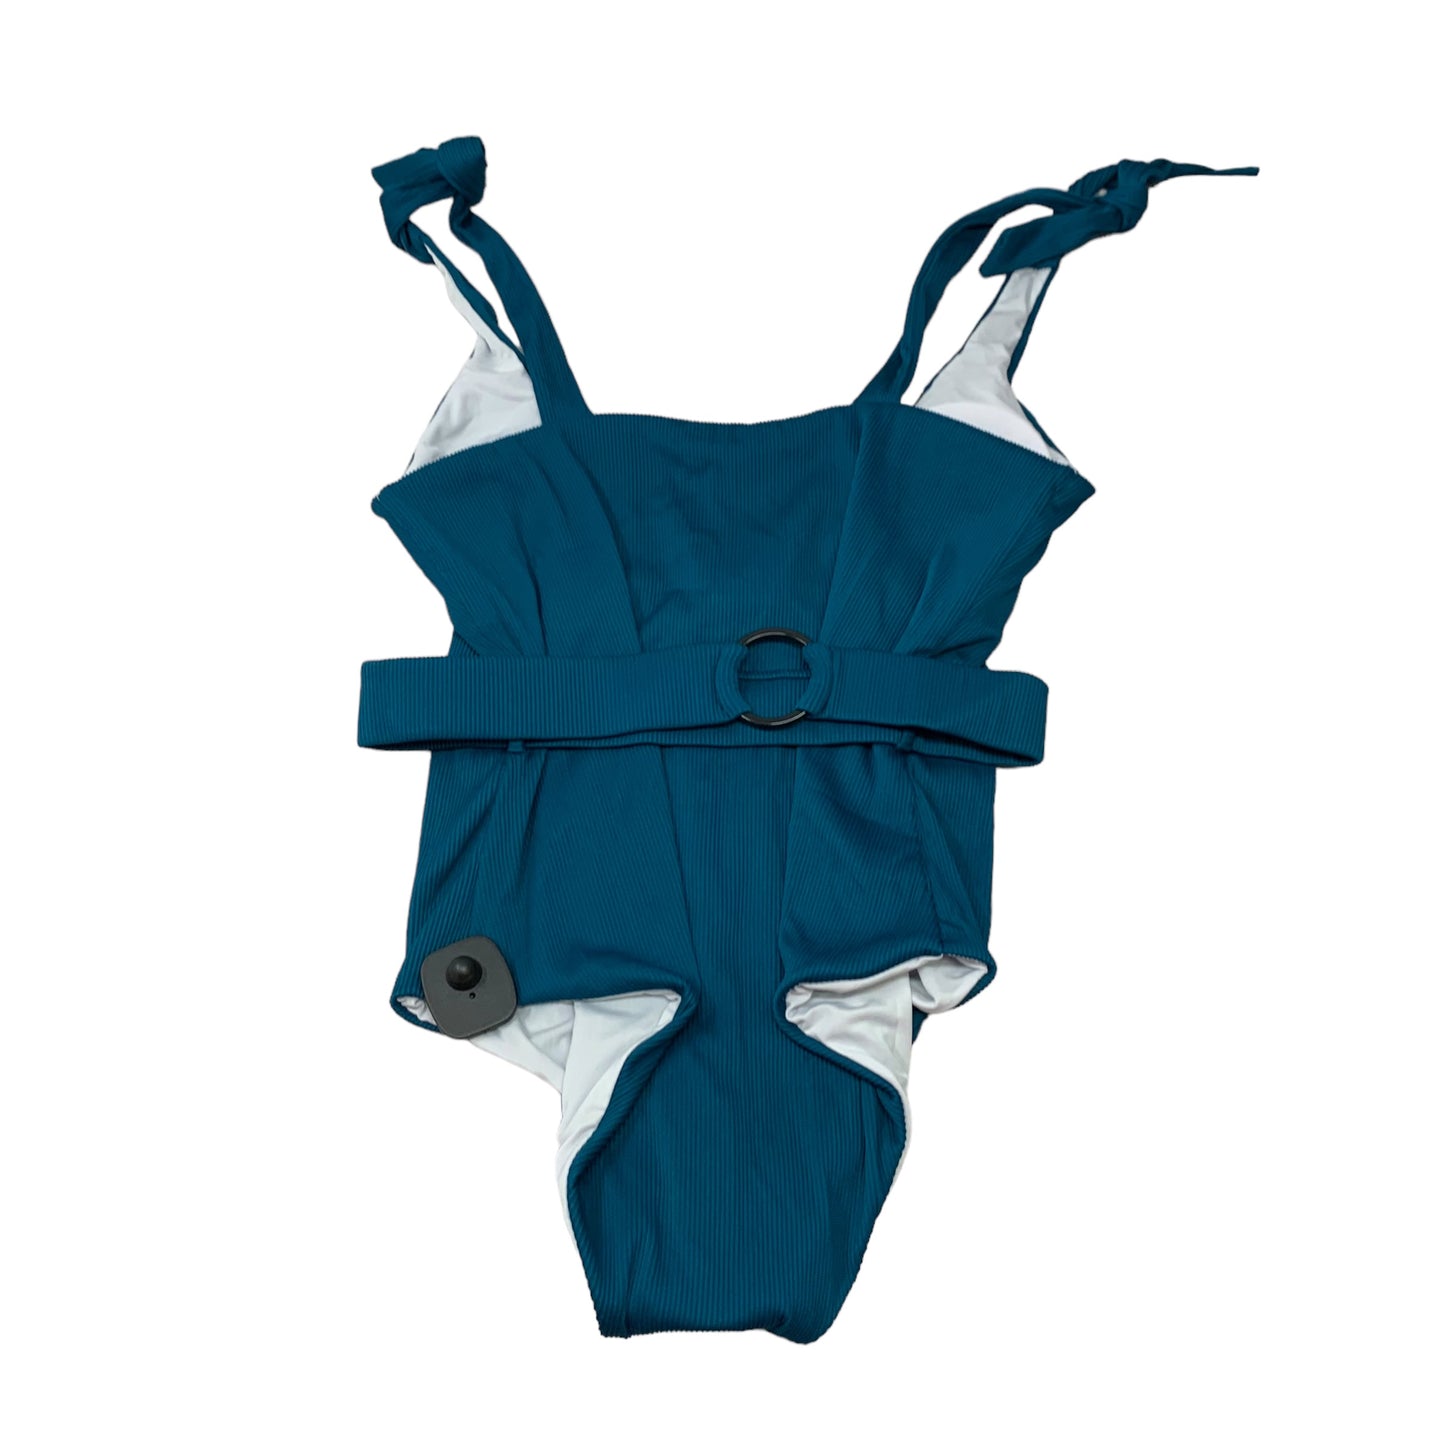 Swimsuit By Filoen  Size: 1x